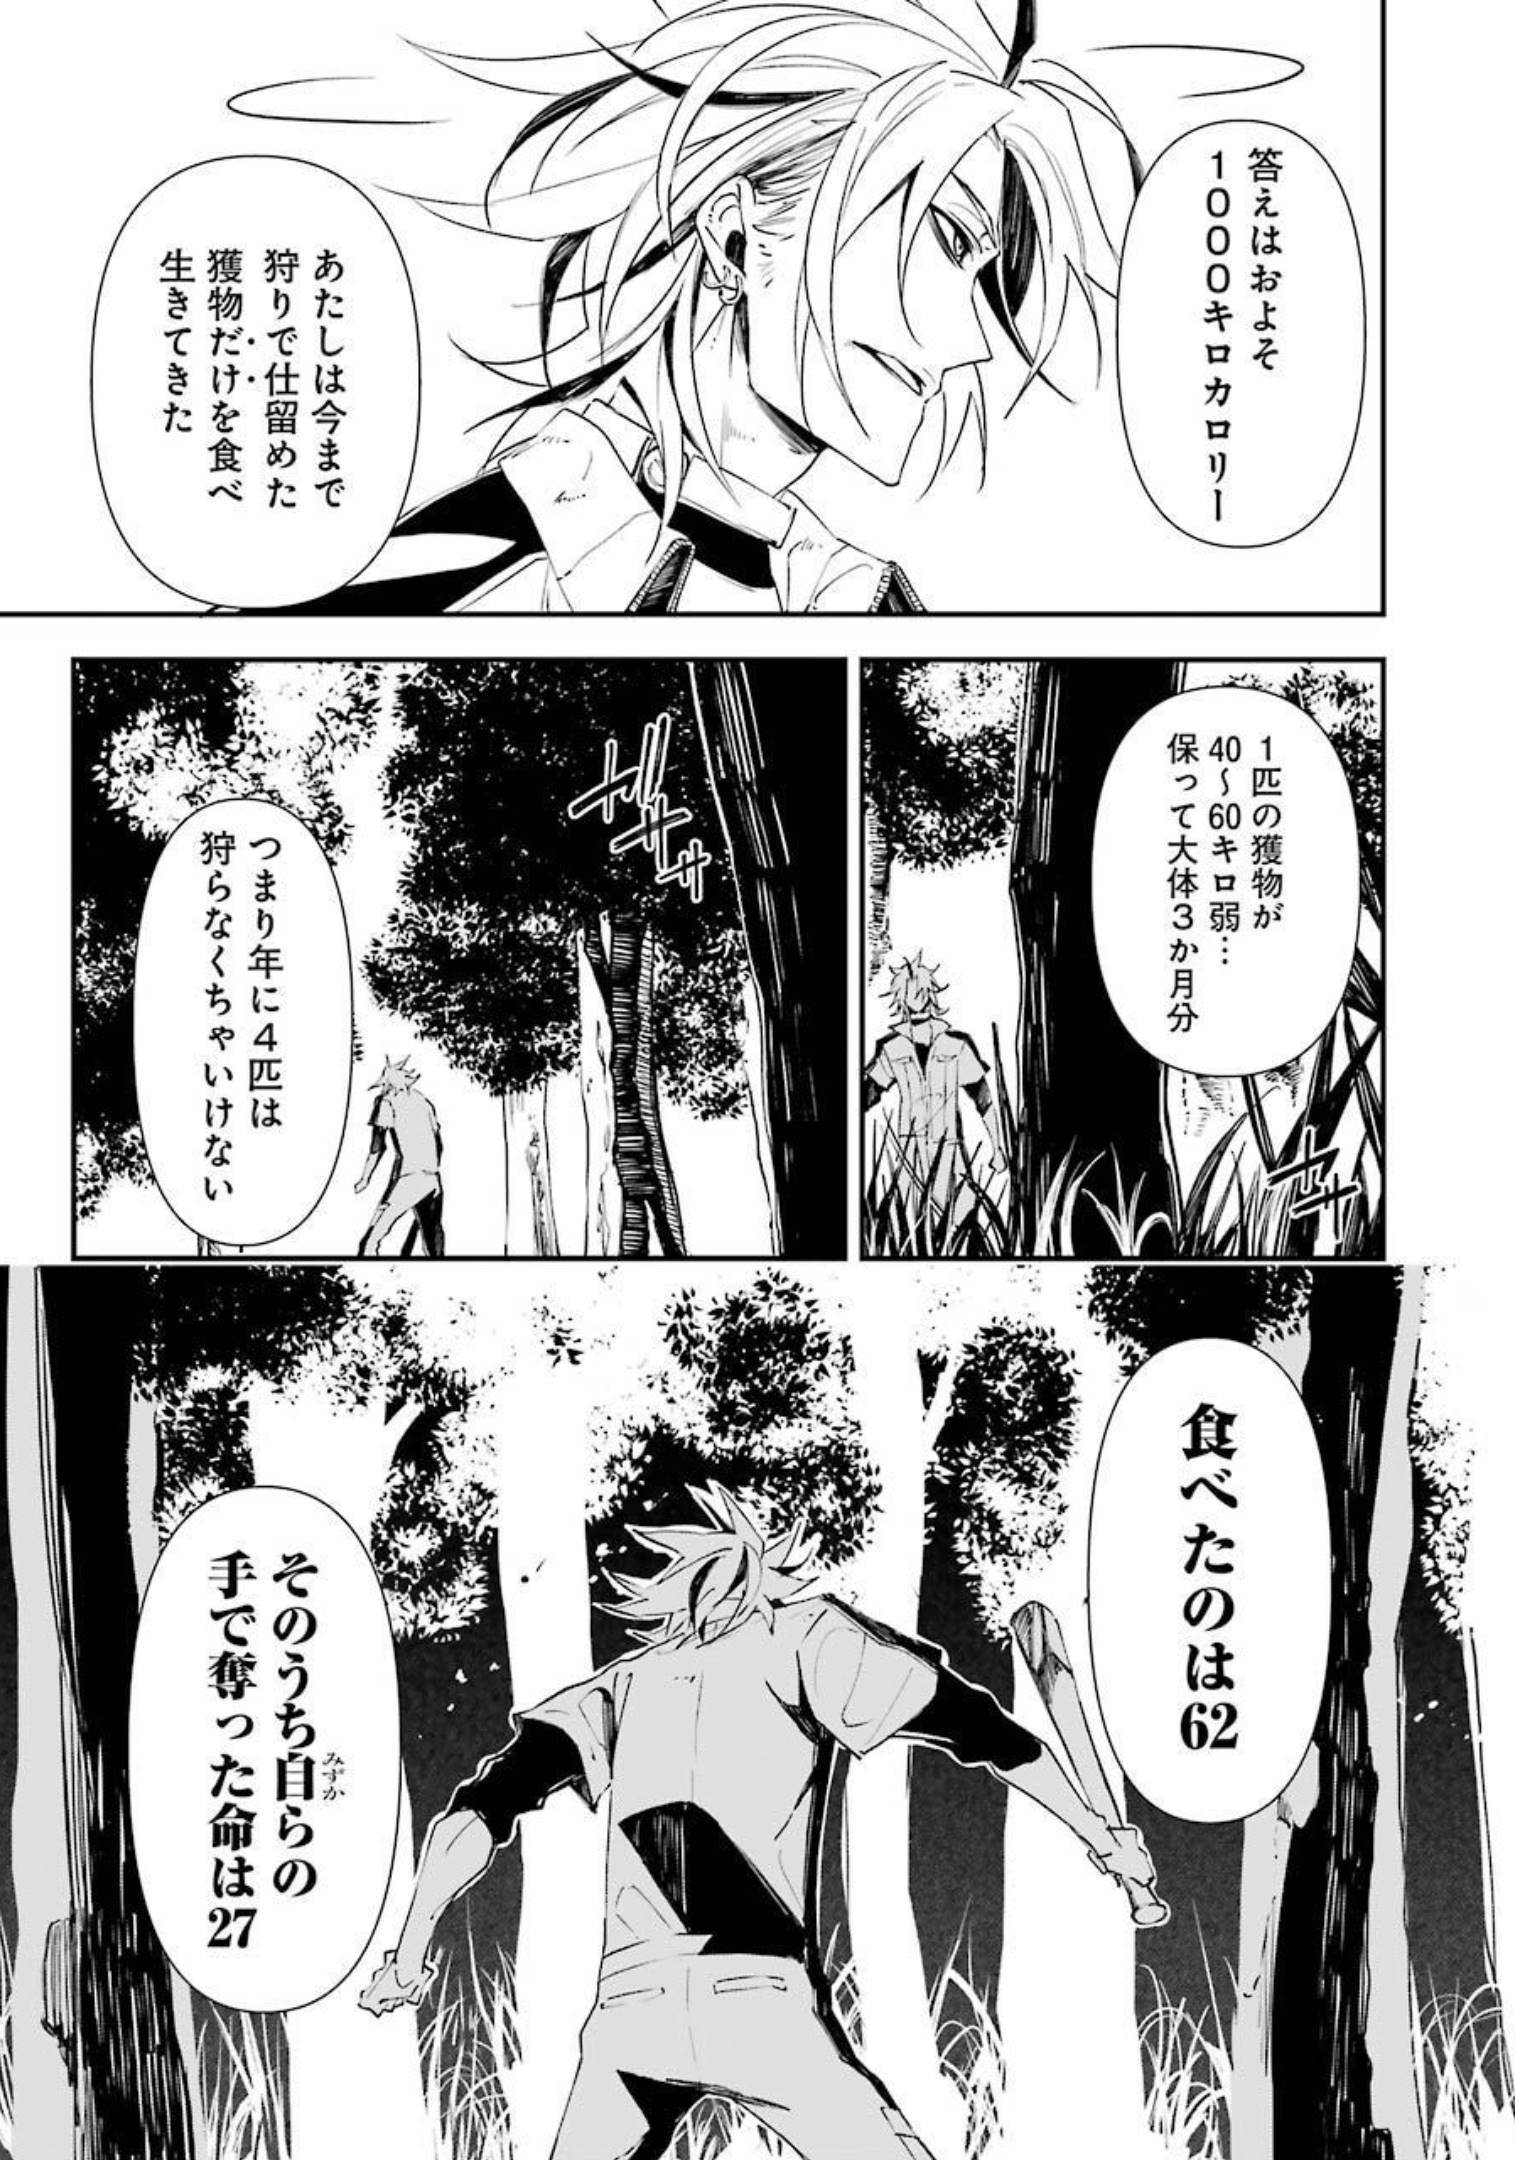 マーダーロック-殺人鬼の凶室-; Mādārokku – satsujinki no kyō-shitsu -; Murder Rock-The Murderer’s Chamber- 第16話 - Page 15